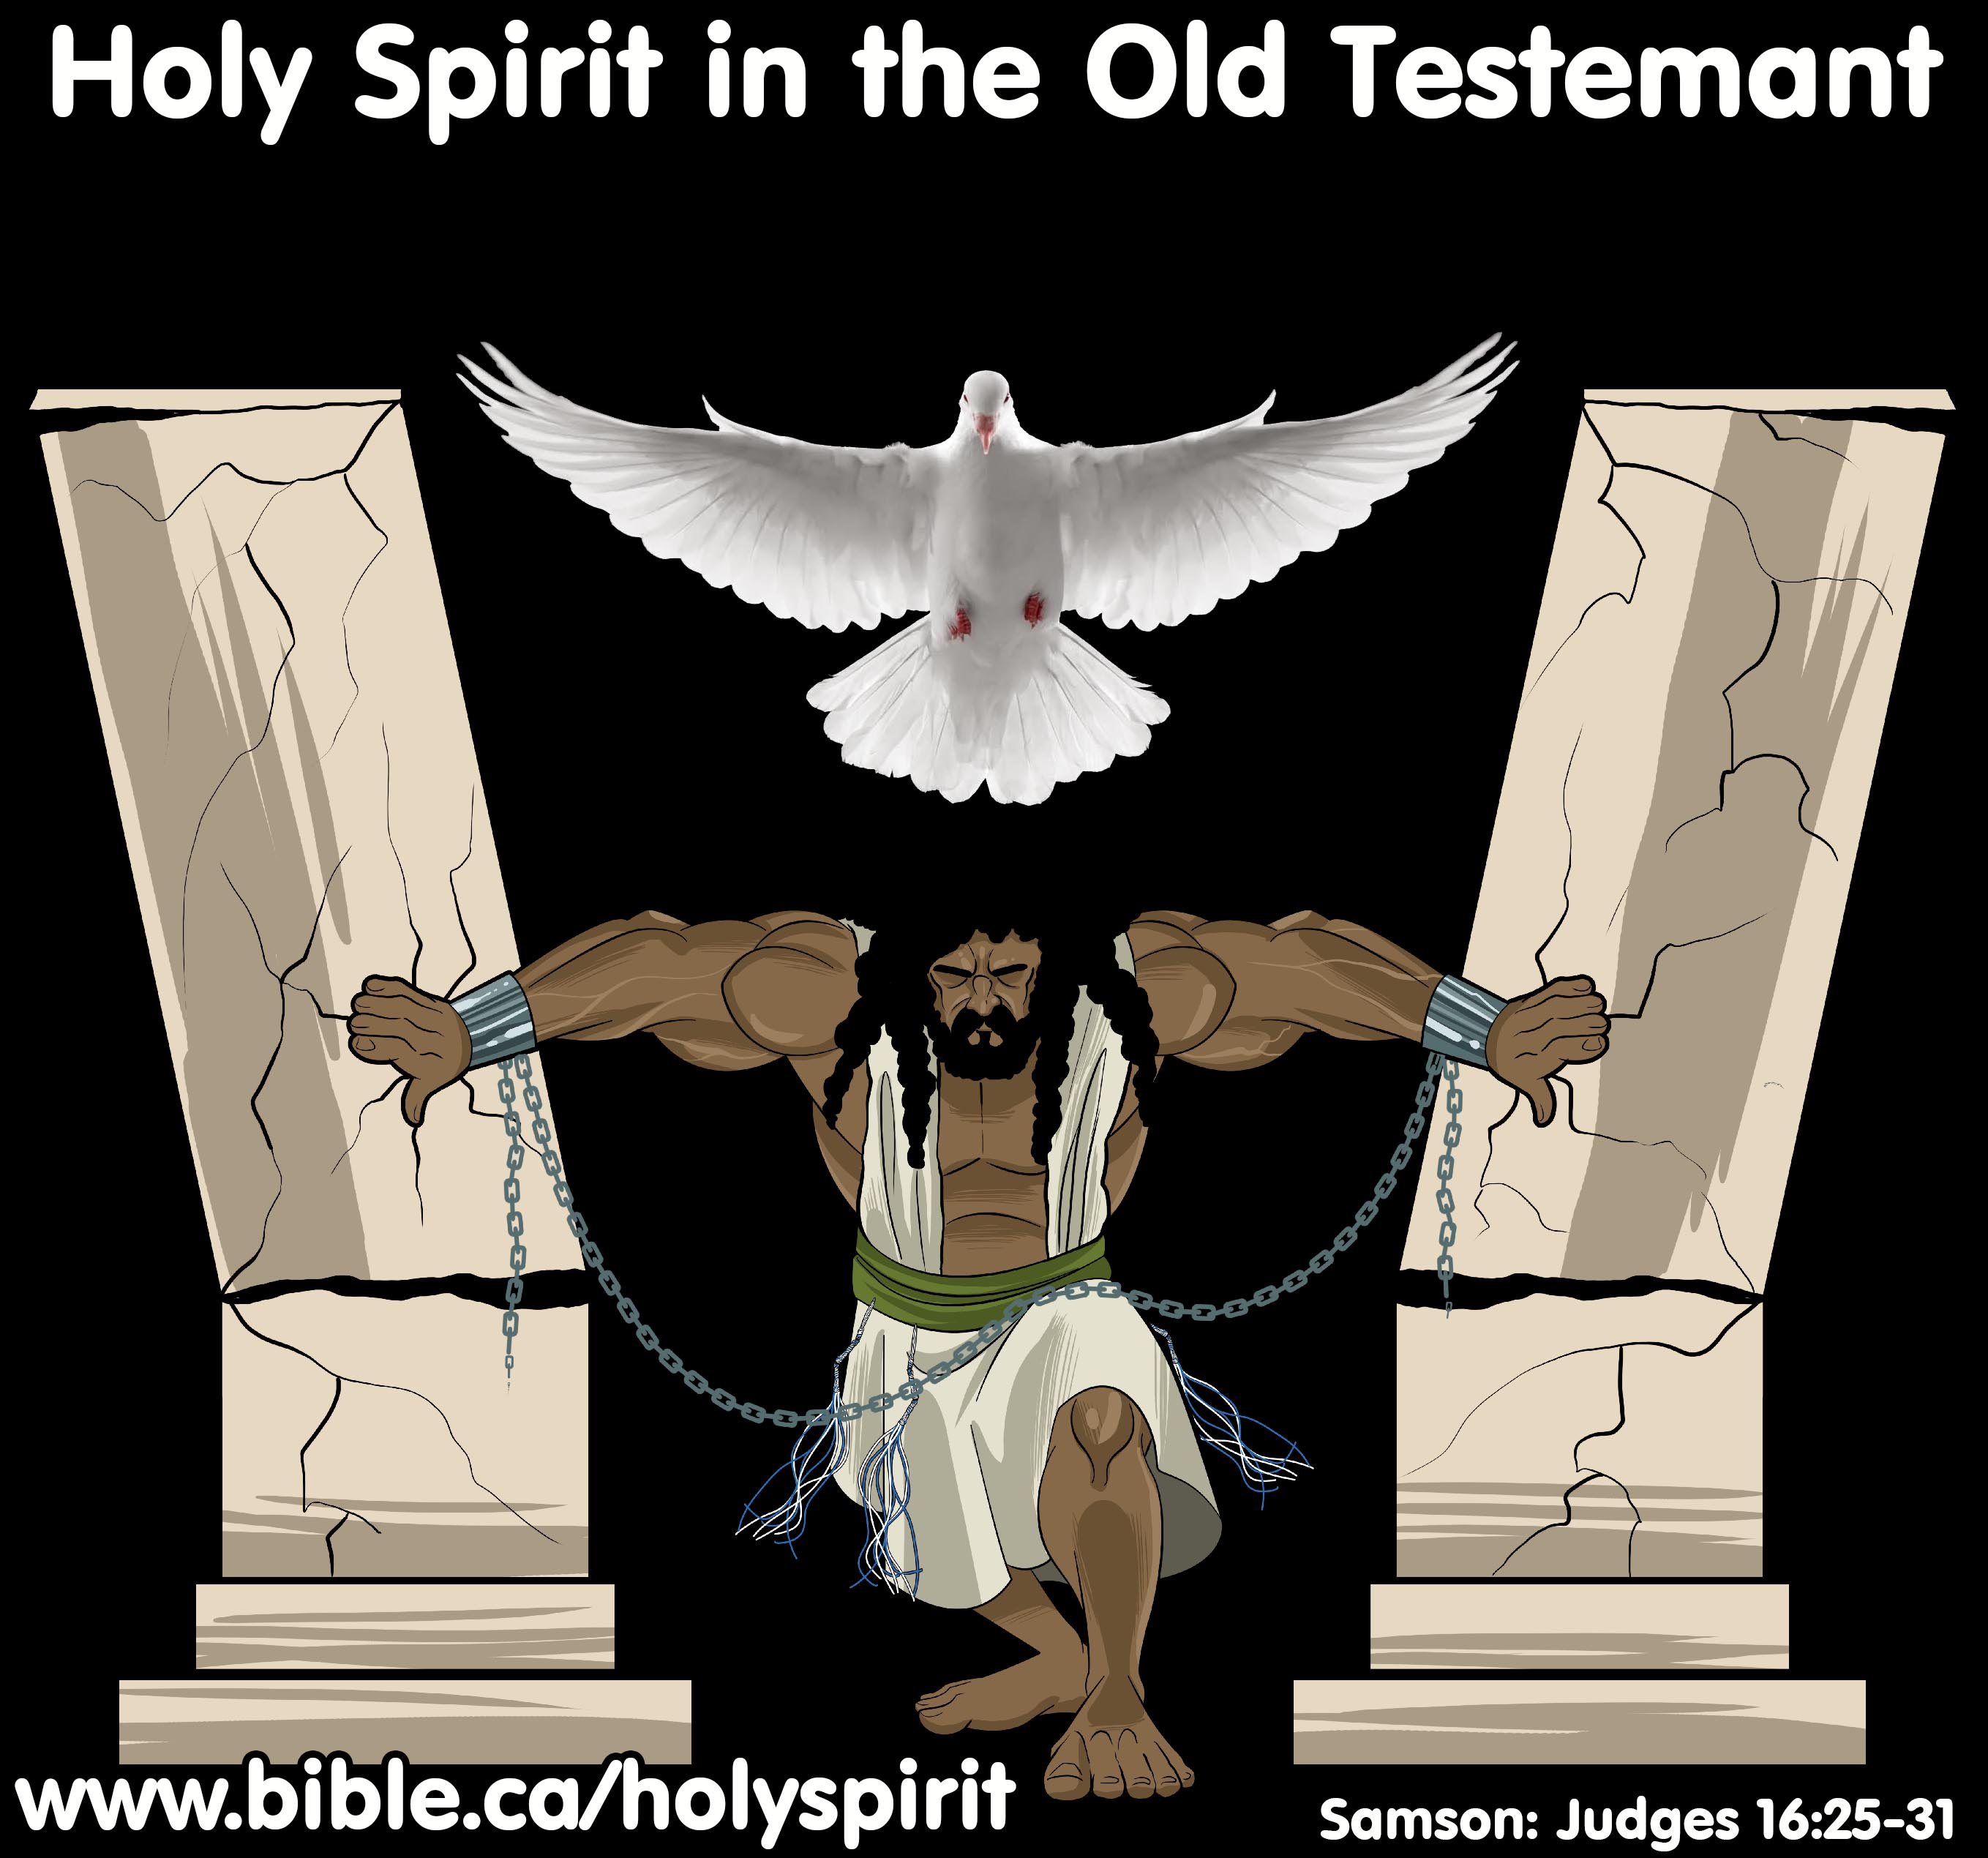 https://www.bible.ca/holyspirit/Holy-Spirit-in-the-Old-Testament-Samson-dove.jpg